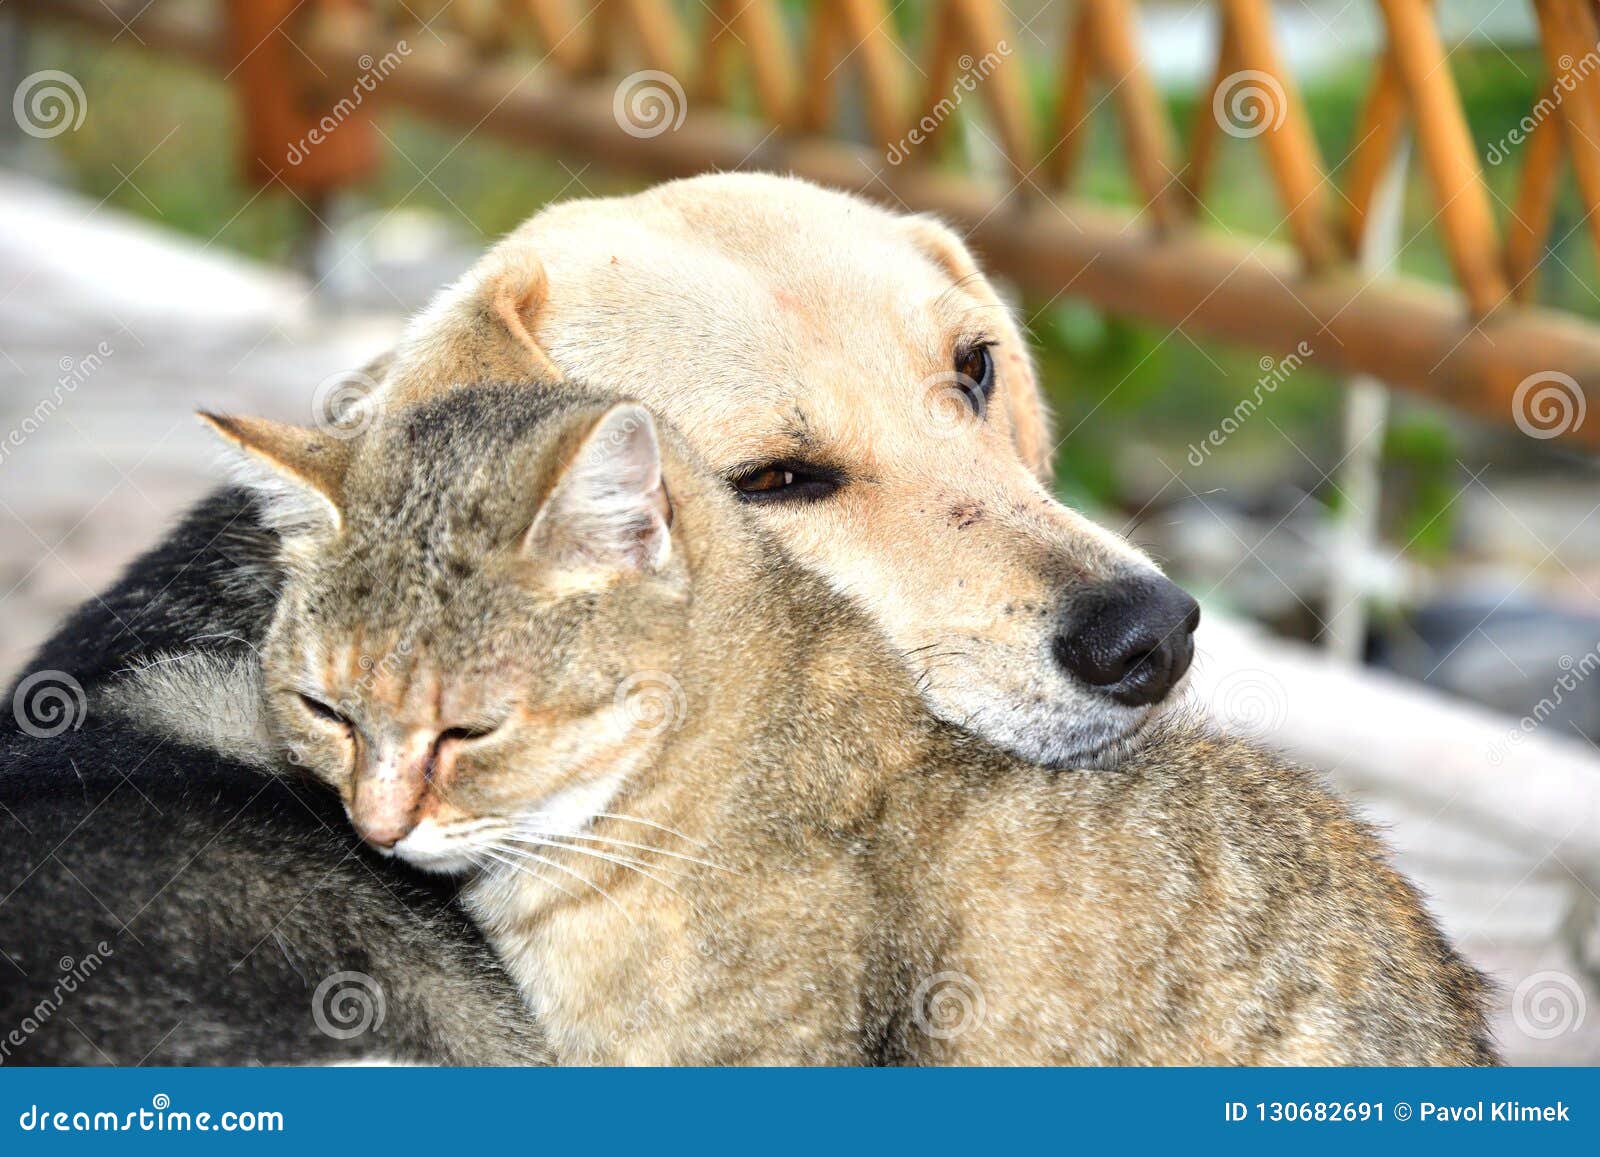 Hund Und Katze, Zum Sich in Den Besten Freunden Der Tierliebe Anzuschmiegen  Stockbild - Bild von nett, liebe: 130682691